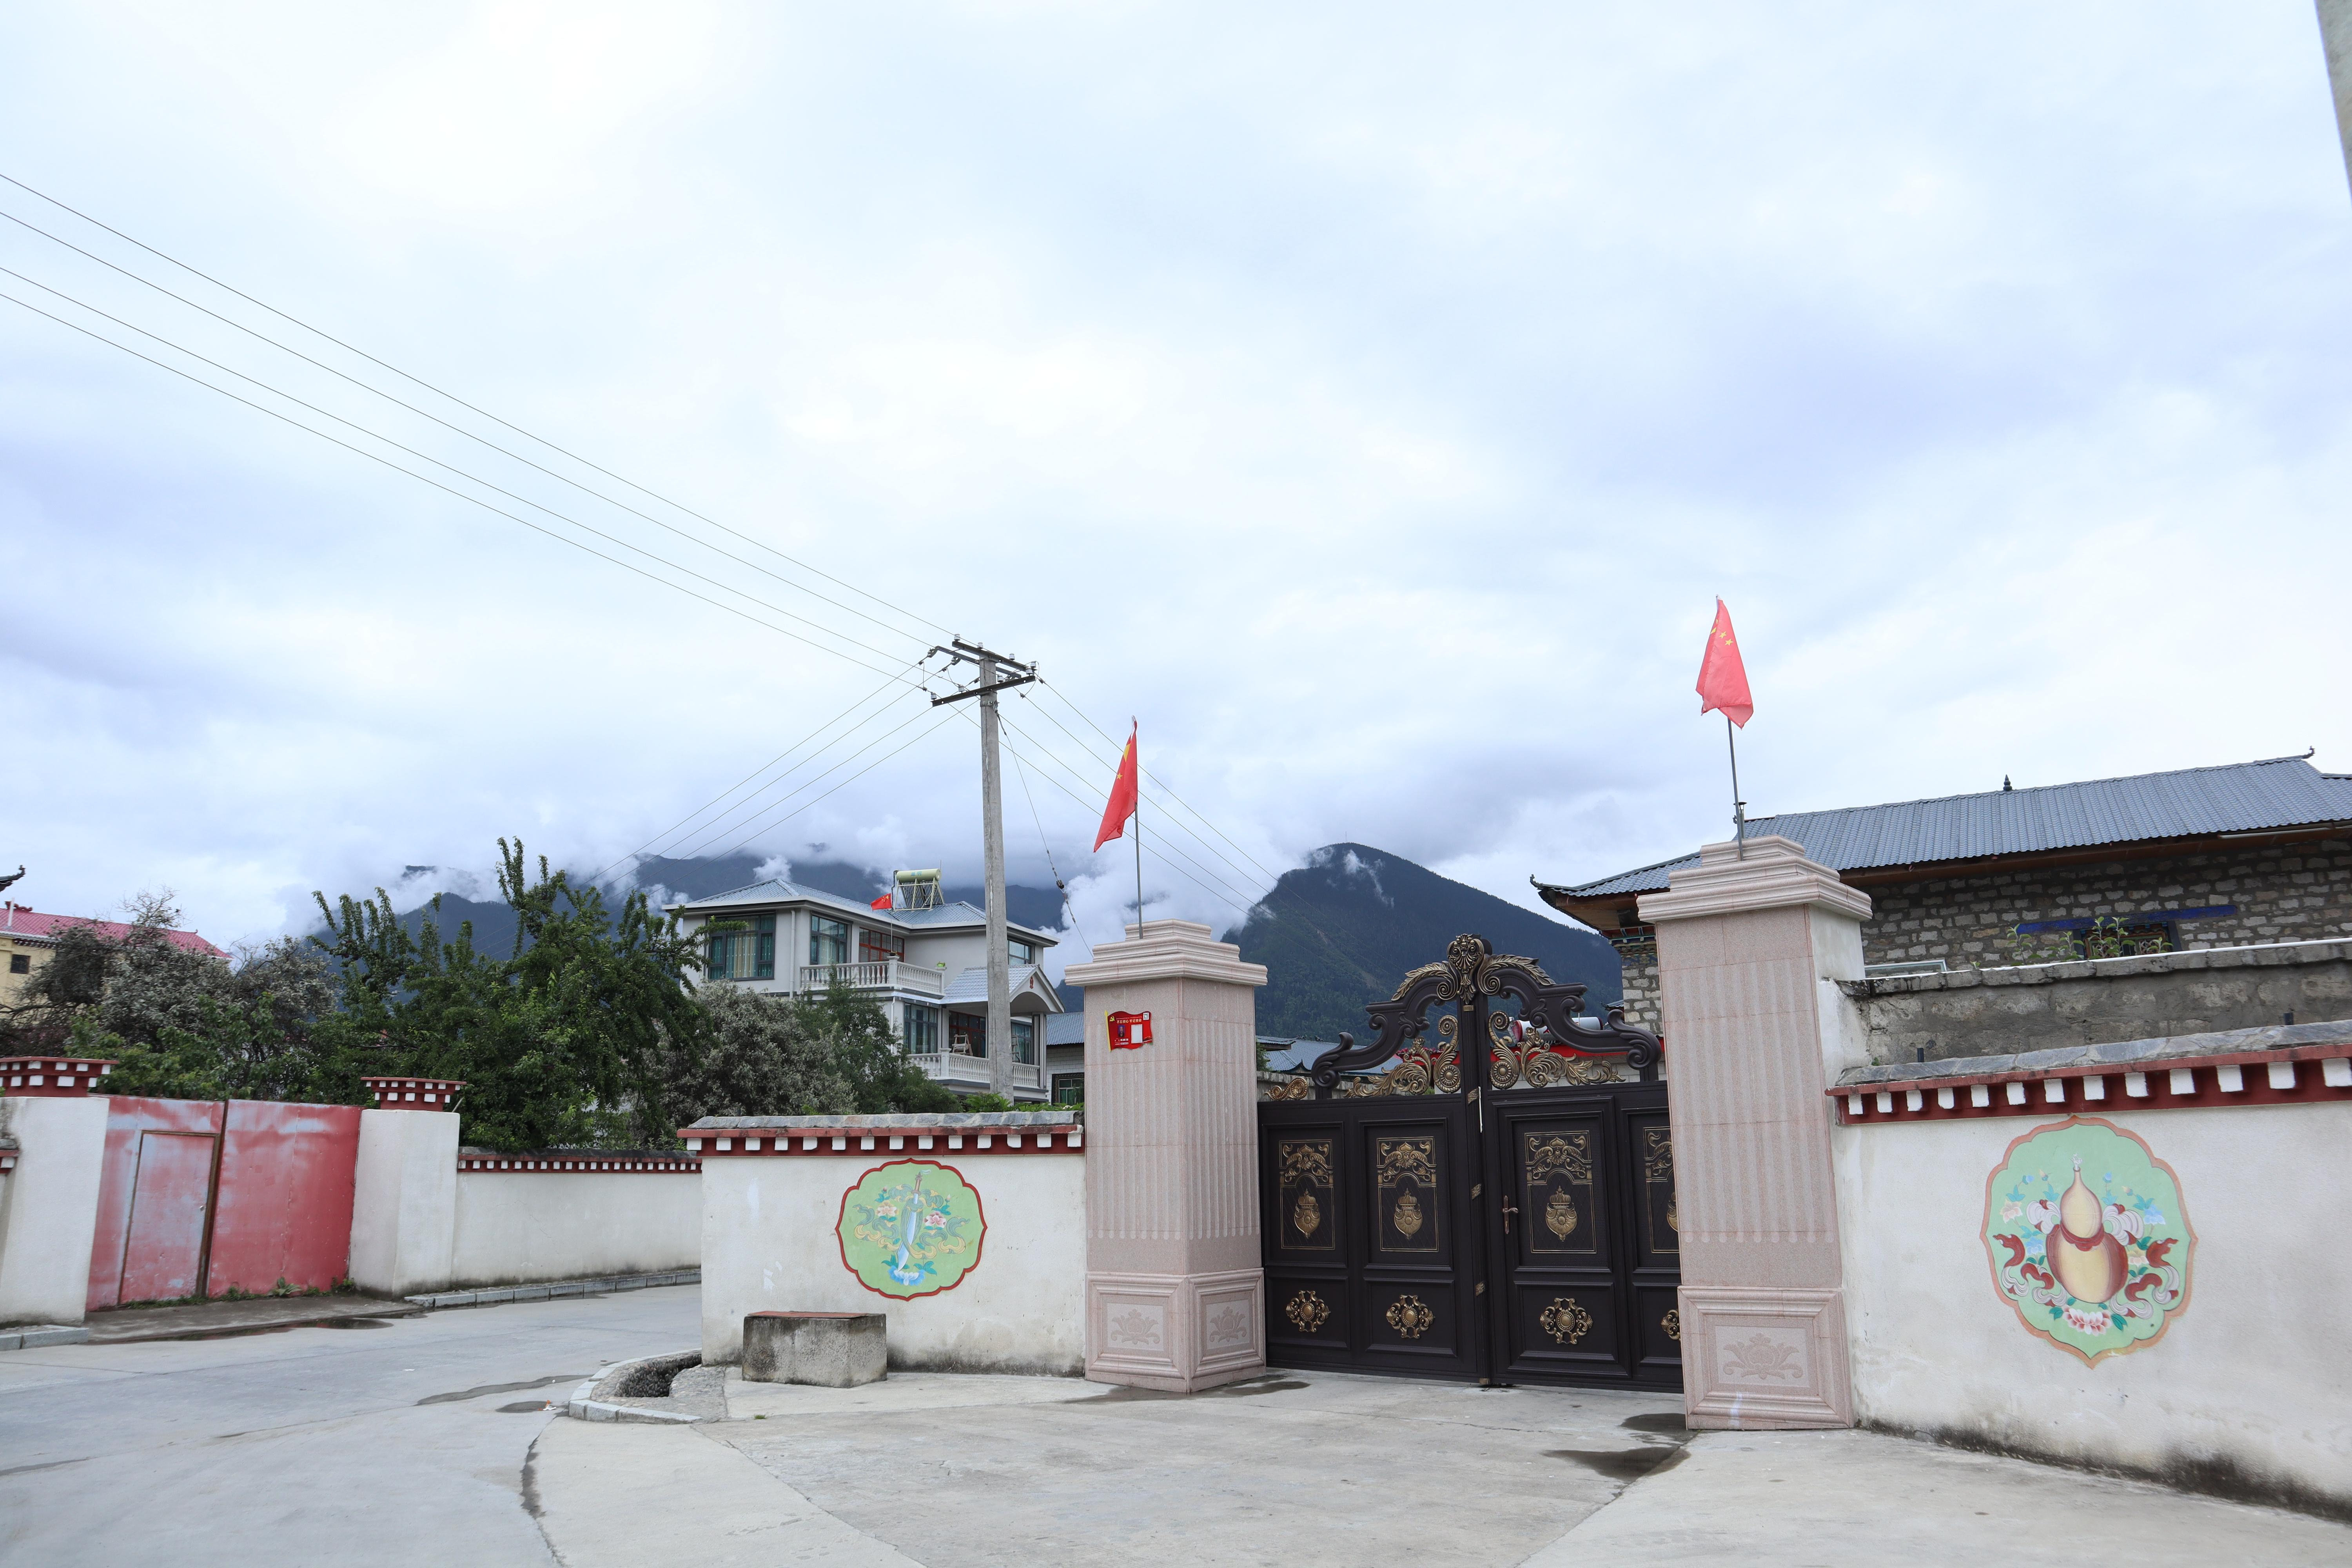 【石榴花开 籽籽同心】工业兴村 生态美村 西藏林芝巴吉村的幸福生活